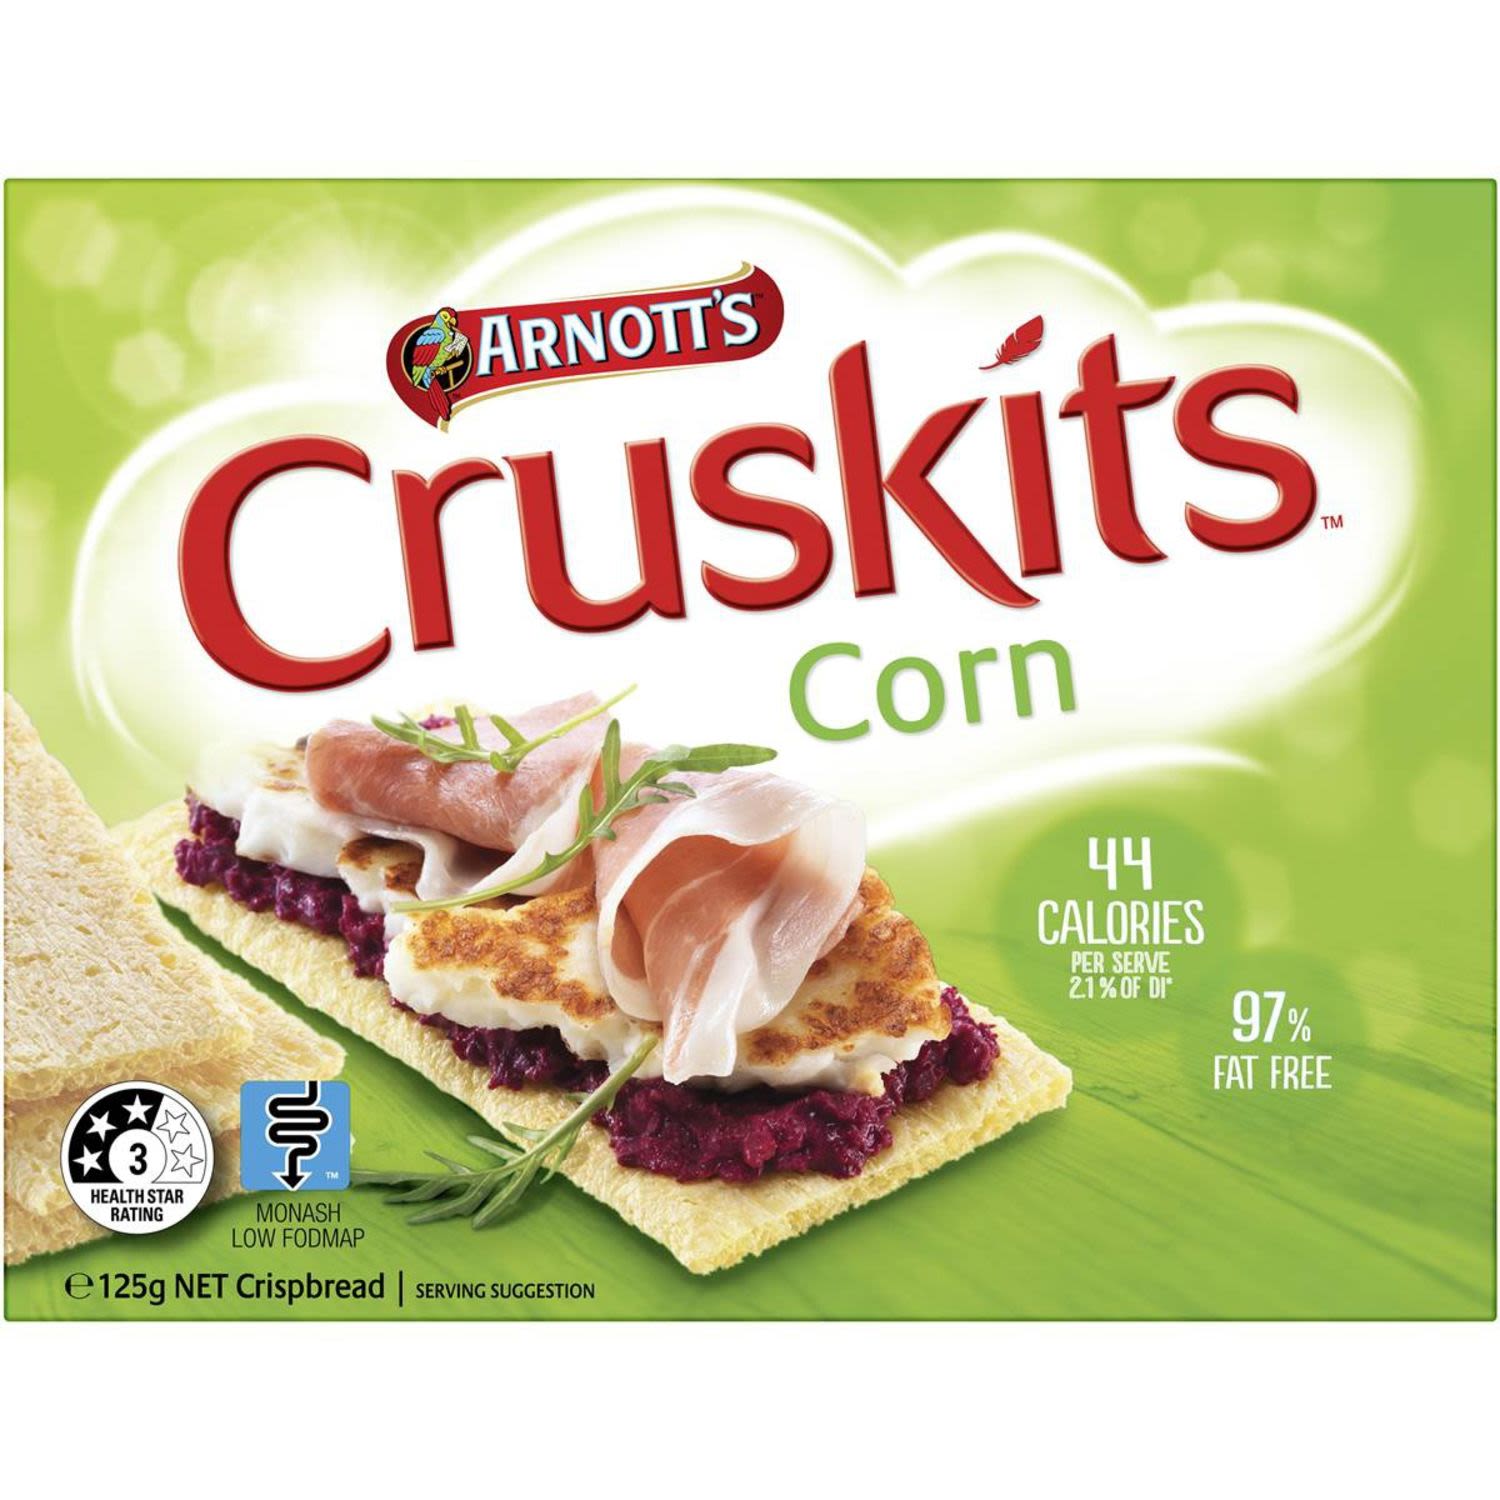 Arnott's Cruskits Corn 97% Fat Free, 125 Gram